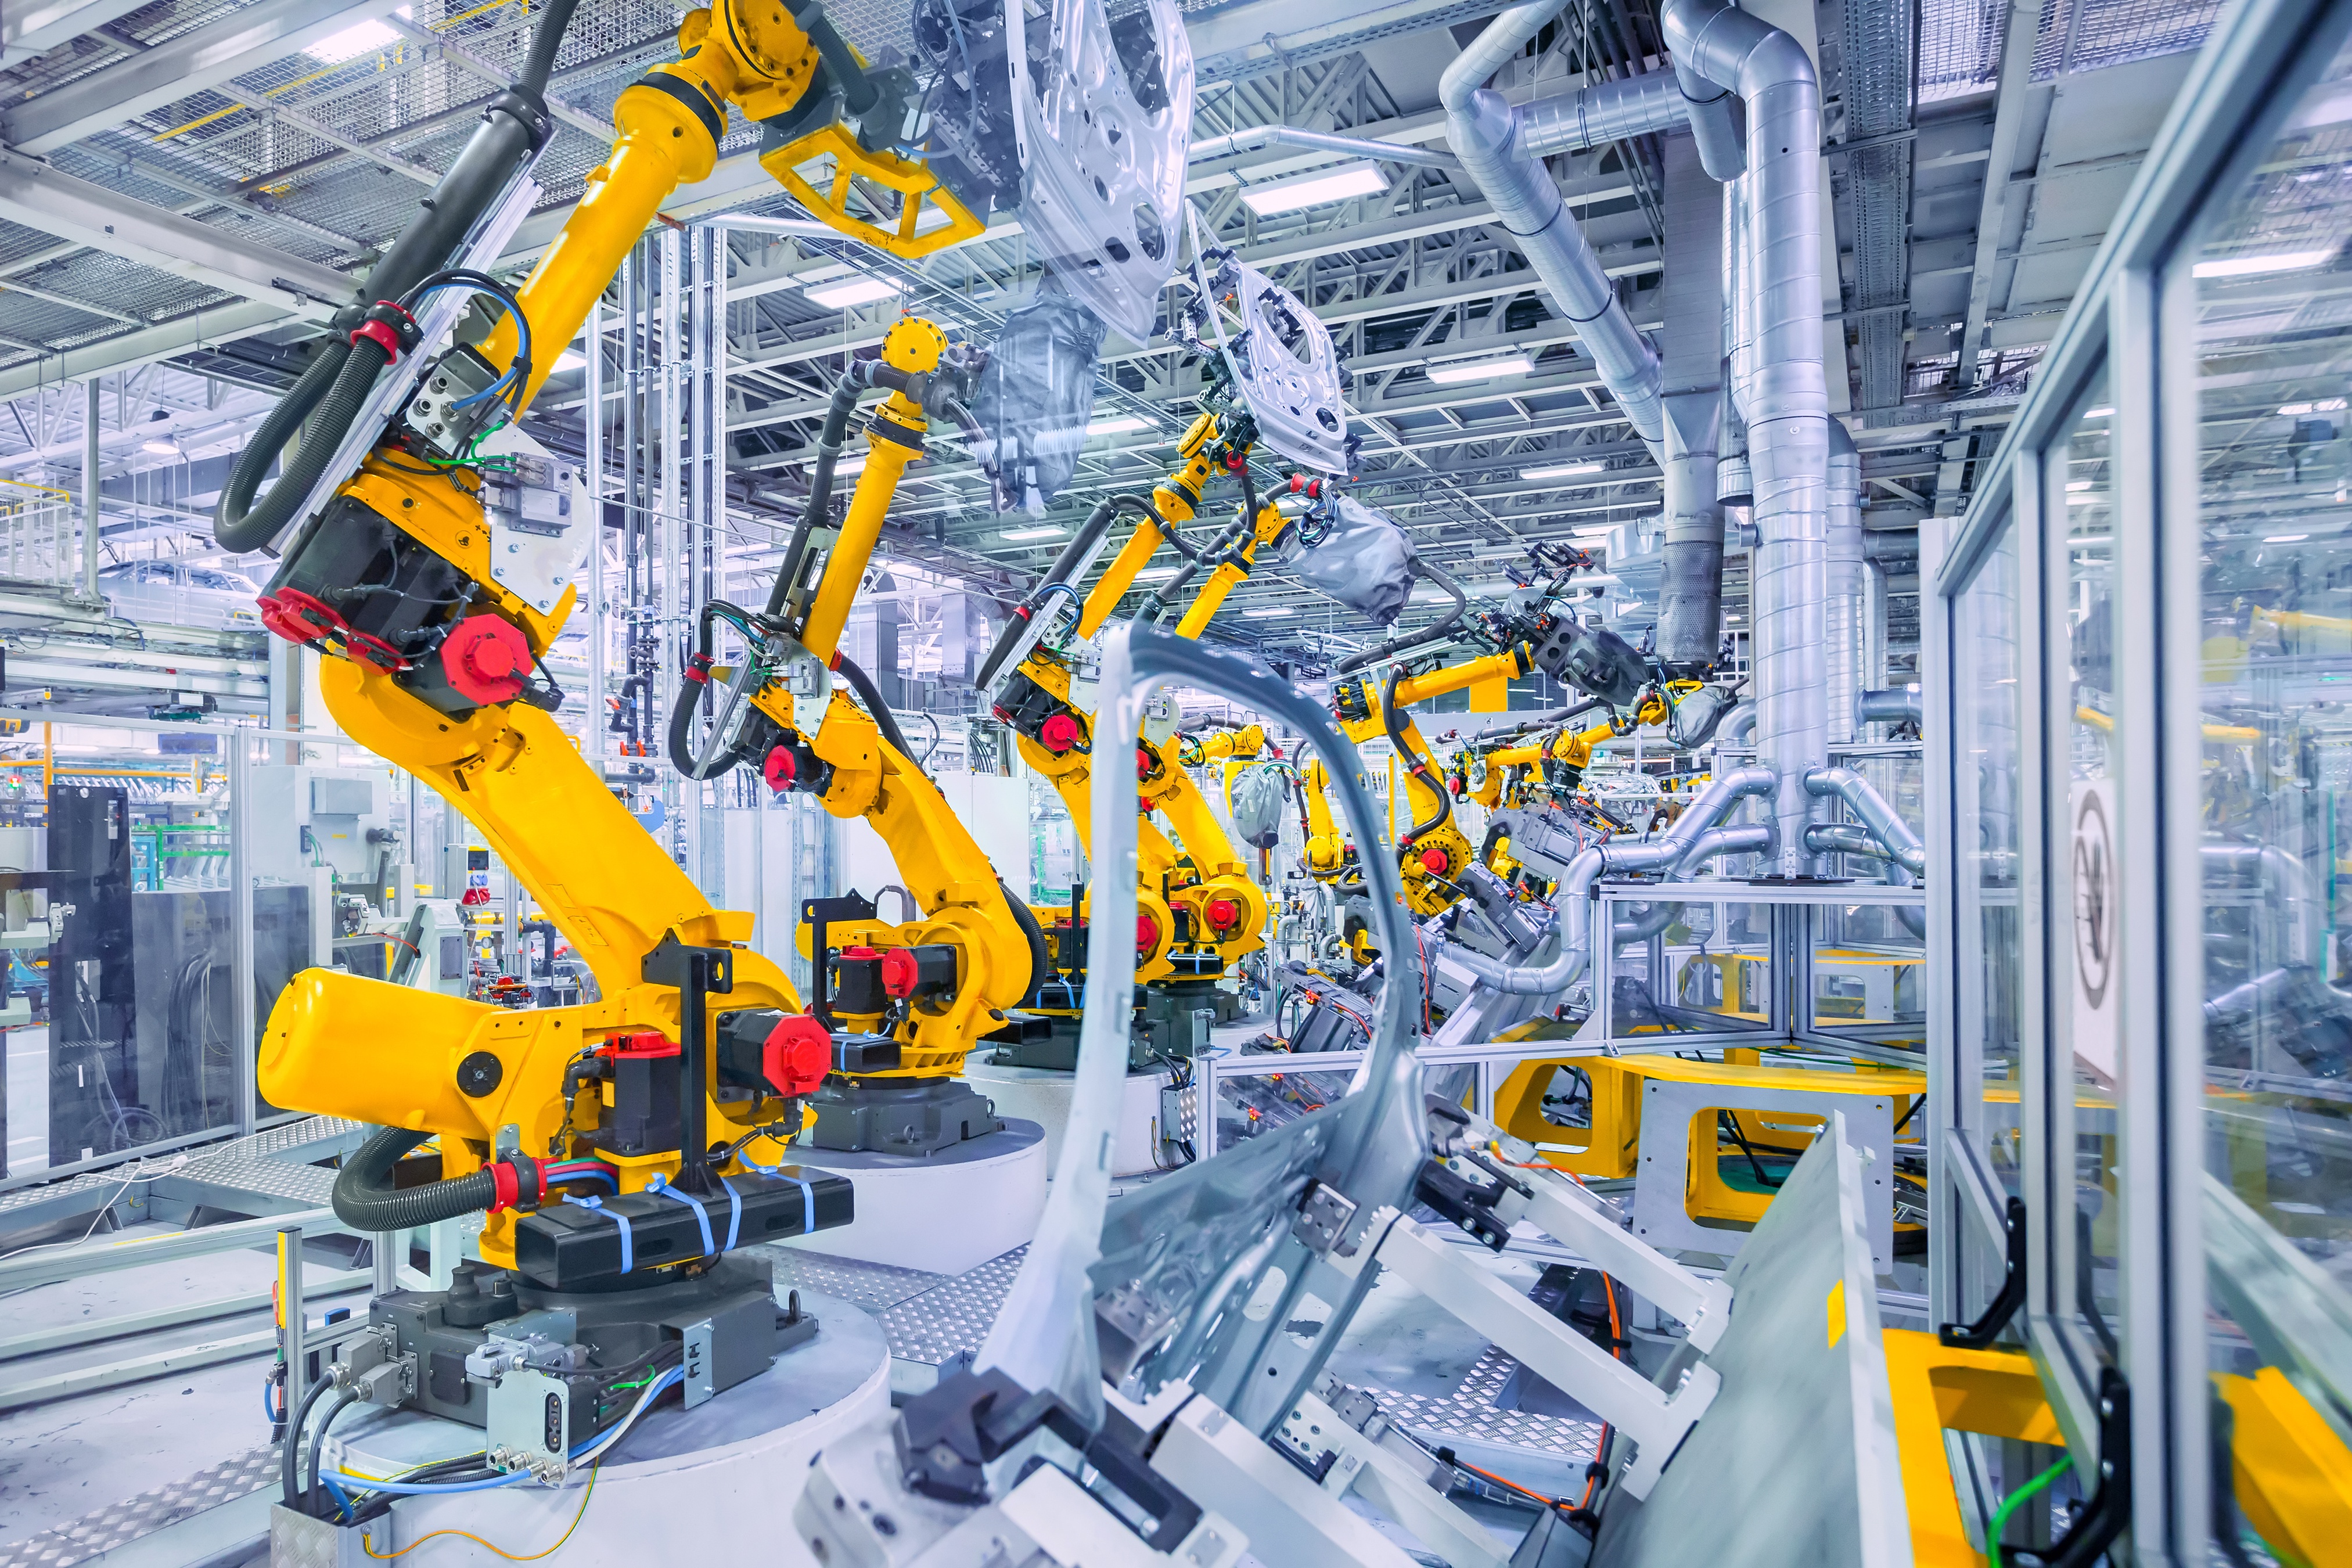 Machine manufacturer. Промышленные роботы. Автоматизация производства. Механизация и автоматизация производства. Роботизированные технологические комплексы в машиностроении.